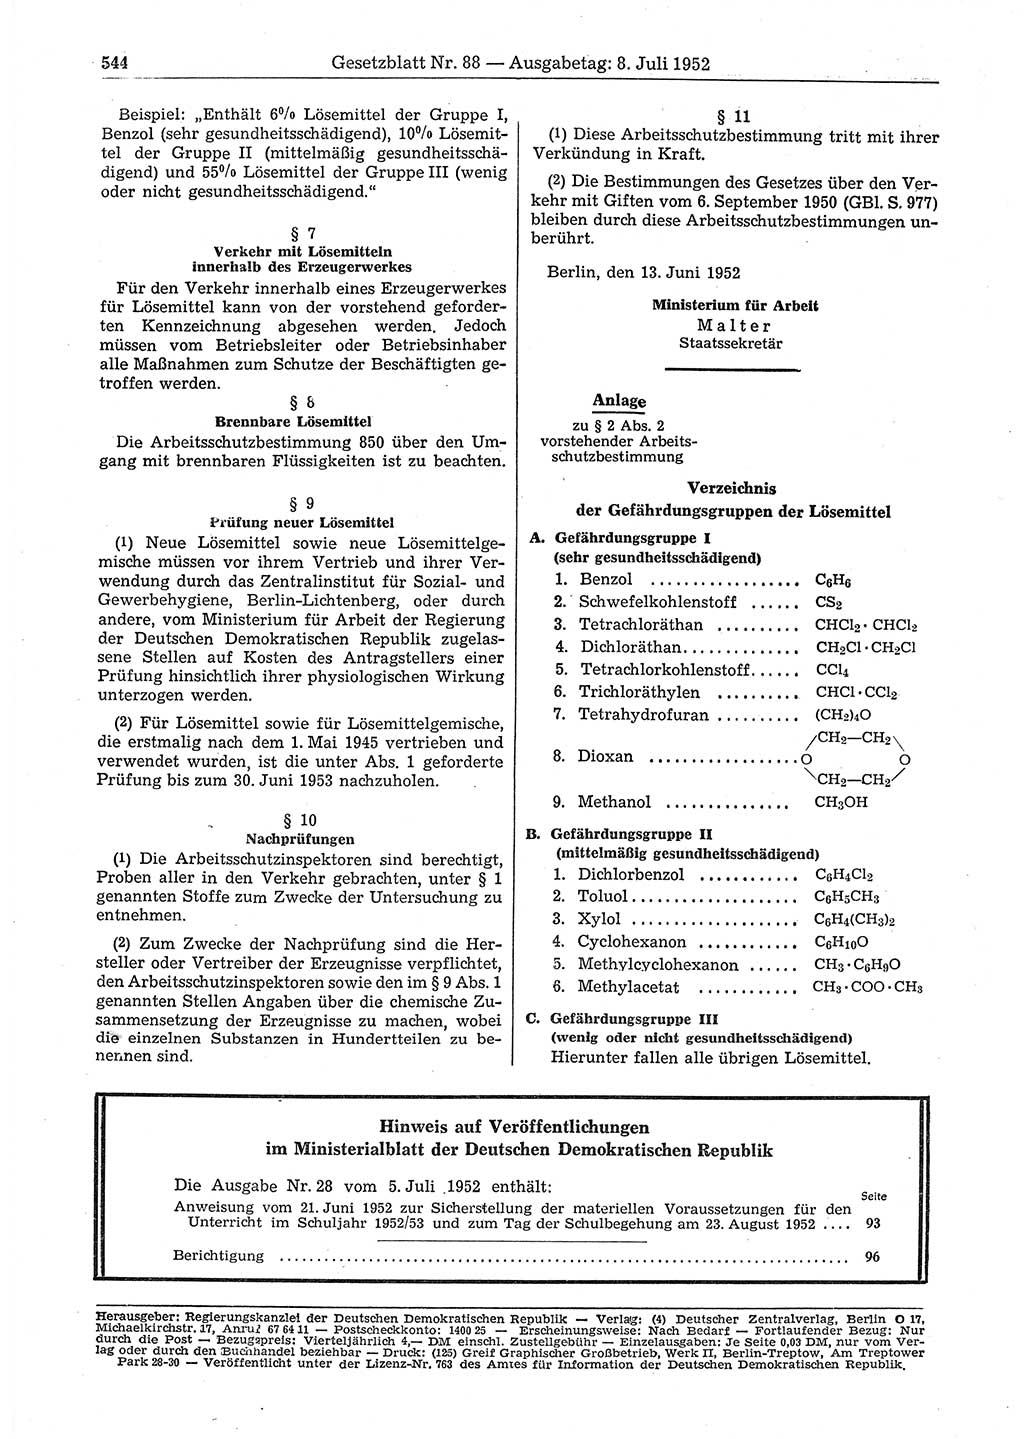 Gesetzblatt (GBl.) der Deutschen Demokratischen Republik (DDR) 1952, Seite 544 (GBl. DDR 1952, S. 544)